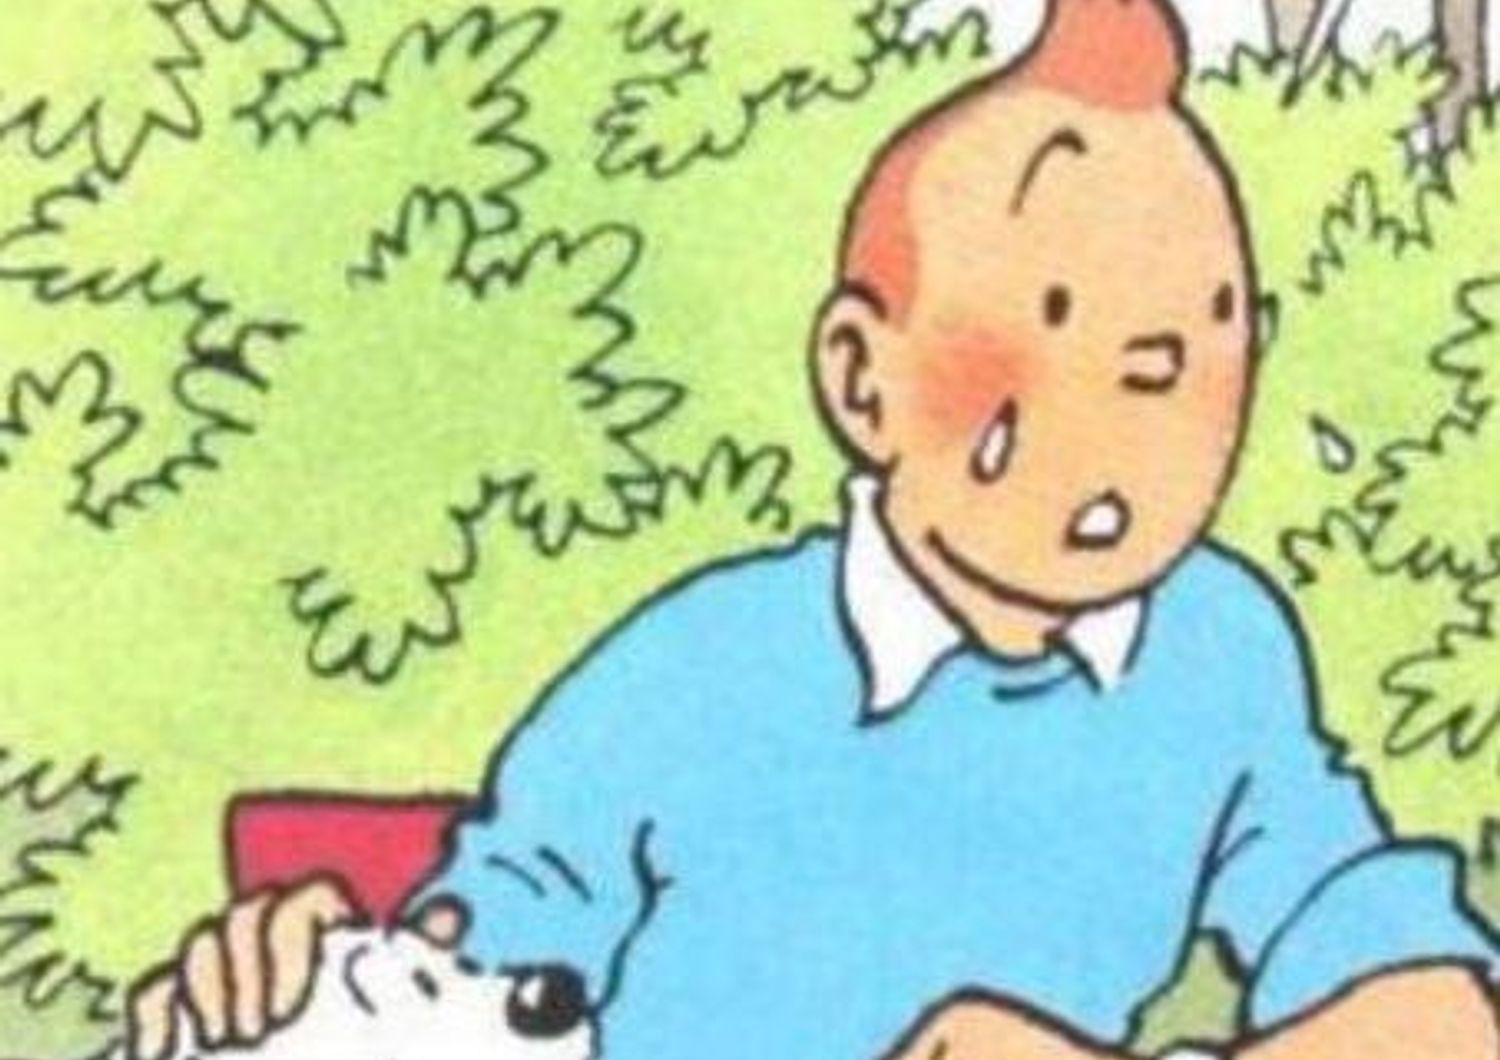 &nbsp;Bruxelles, la solidariet&agrave; corre su Twitter. E' virale la foto di Tintin in lacrime (foto da Twitter)